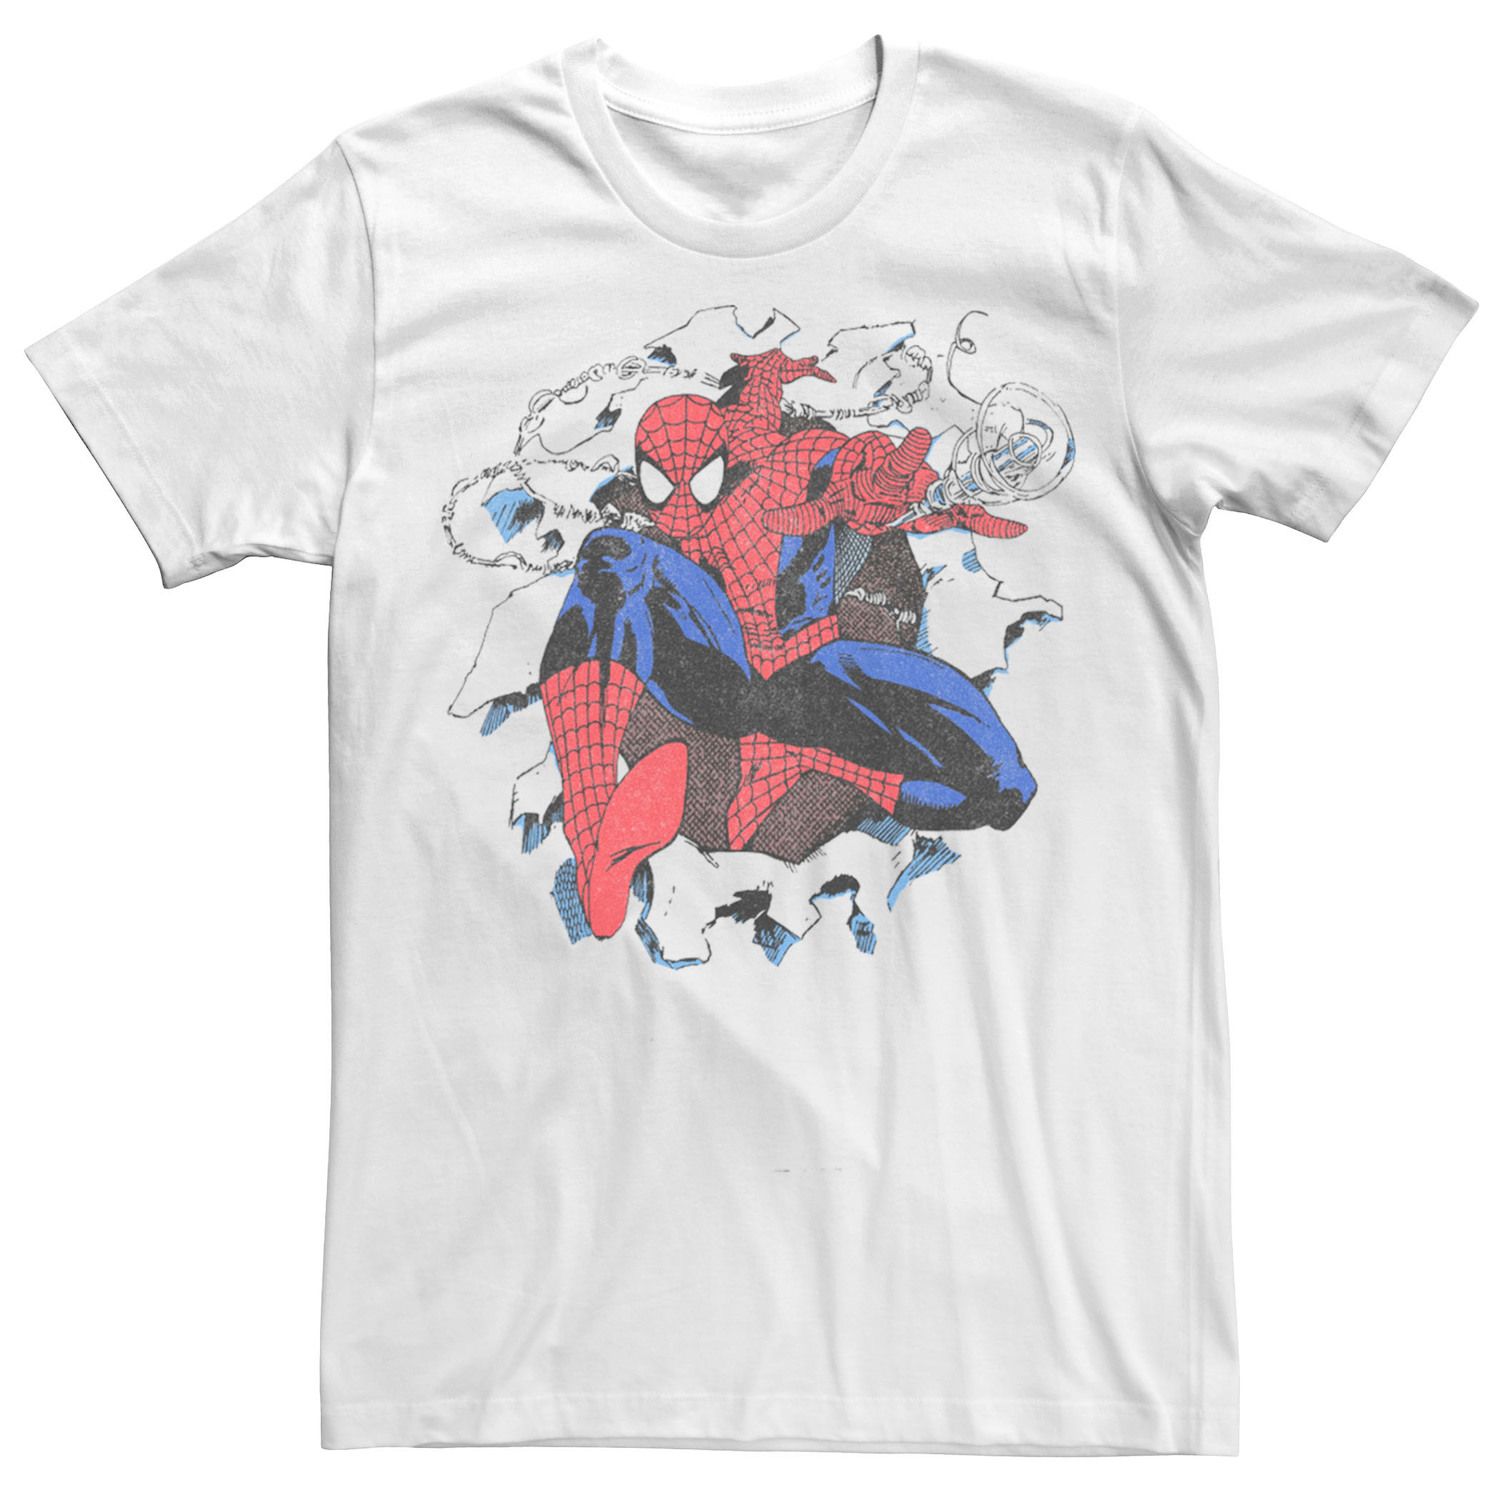 Мужская футболка с изображением Человека-паука в стиле ретро и комиксов Marvel